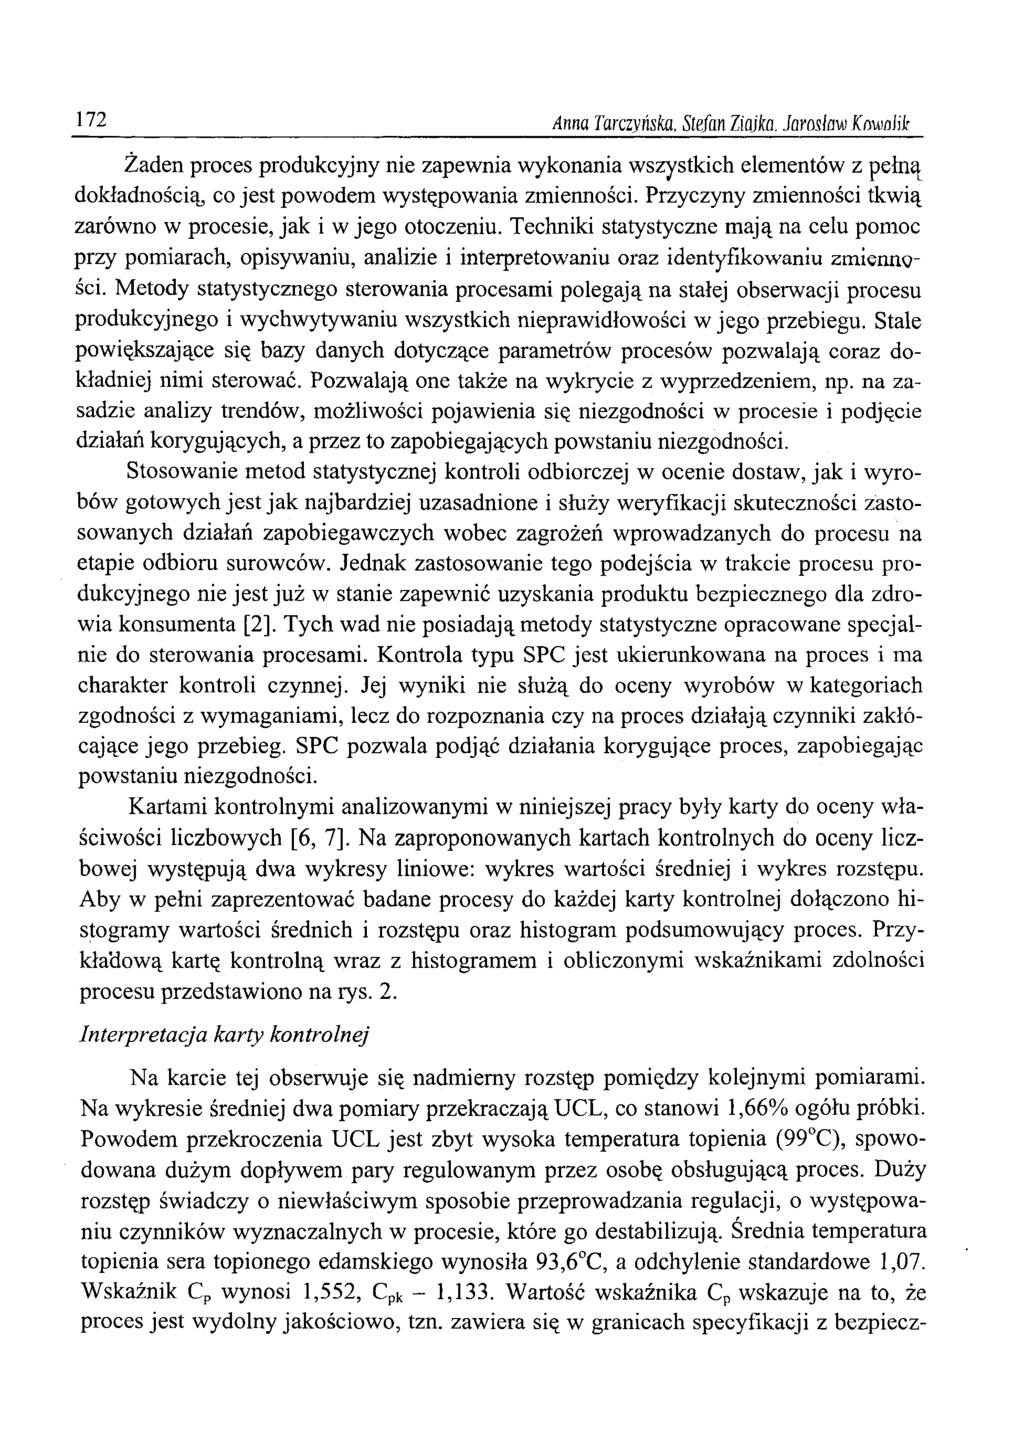 172 Anna Tarczyńska, Stefan Ziajka. Jarosław Kowalik Żaden proces produkcyjny nie zapewnia wykonania wszystkich elementów z pełną dokładnością, co jest powodem występowania zmienności.